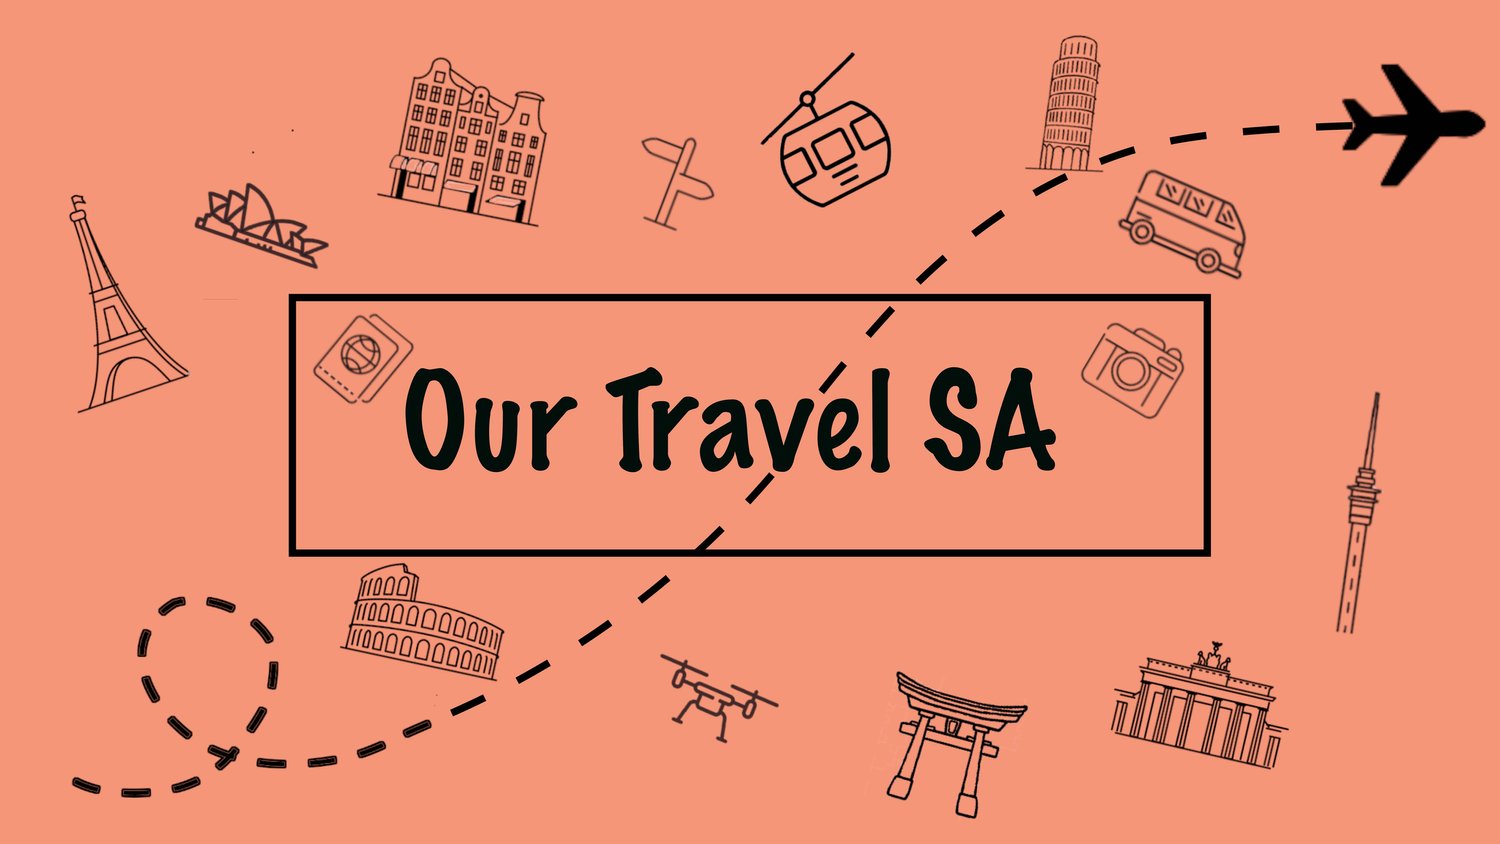 Our Travel SA